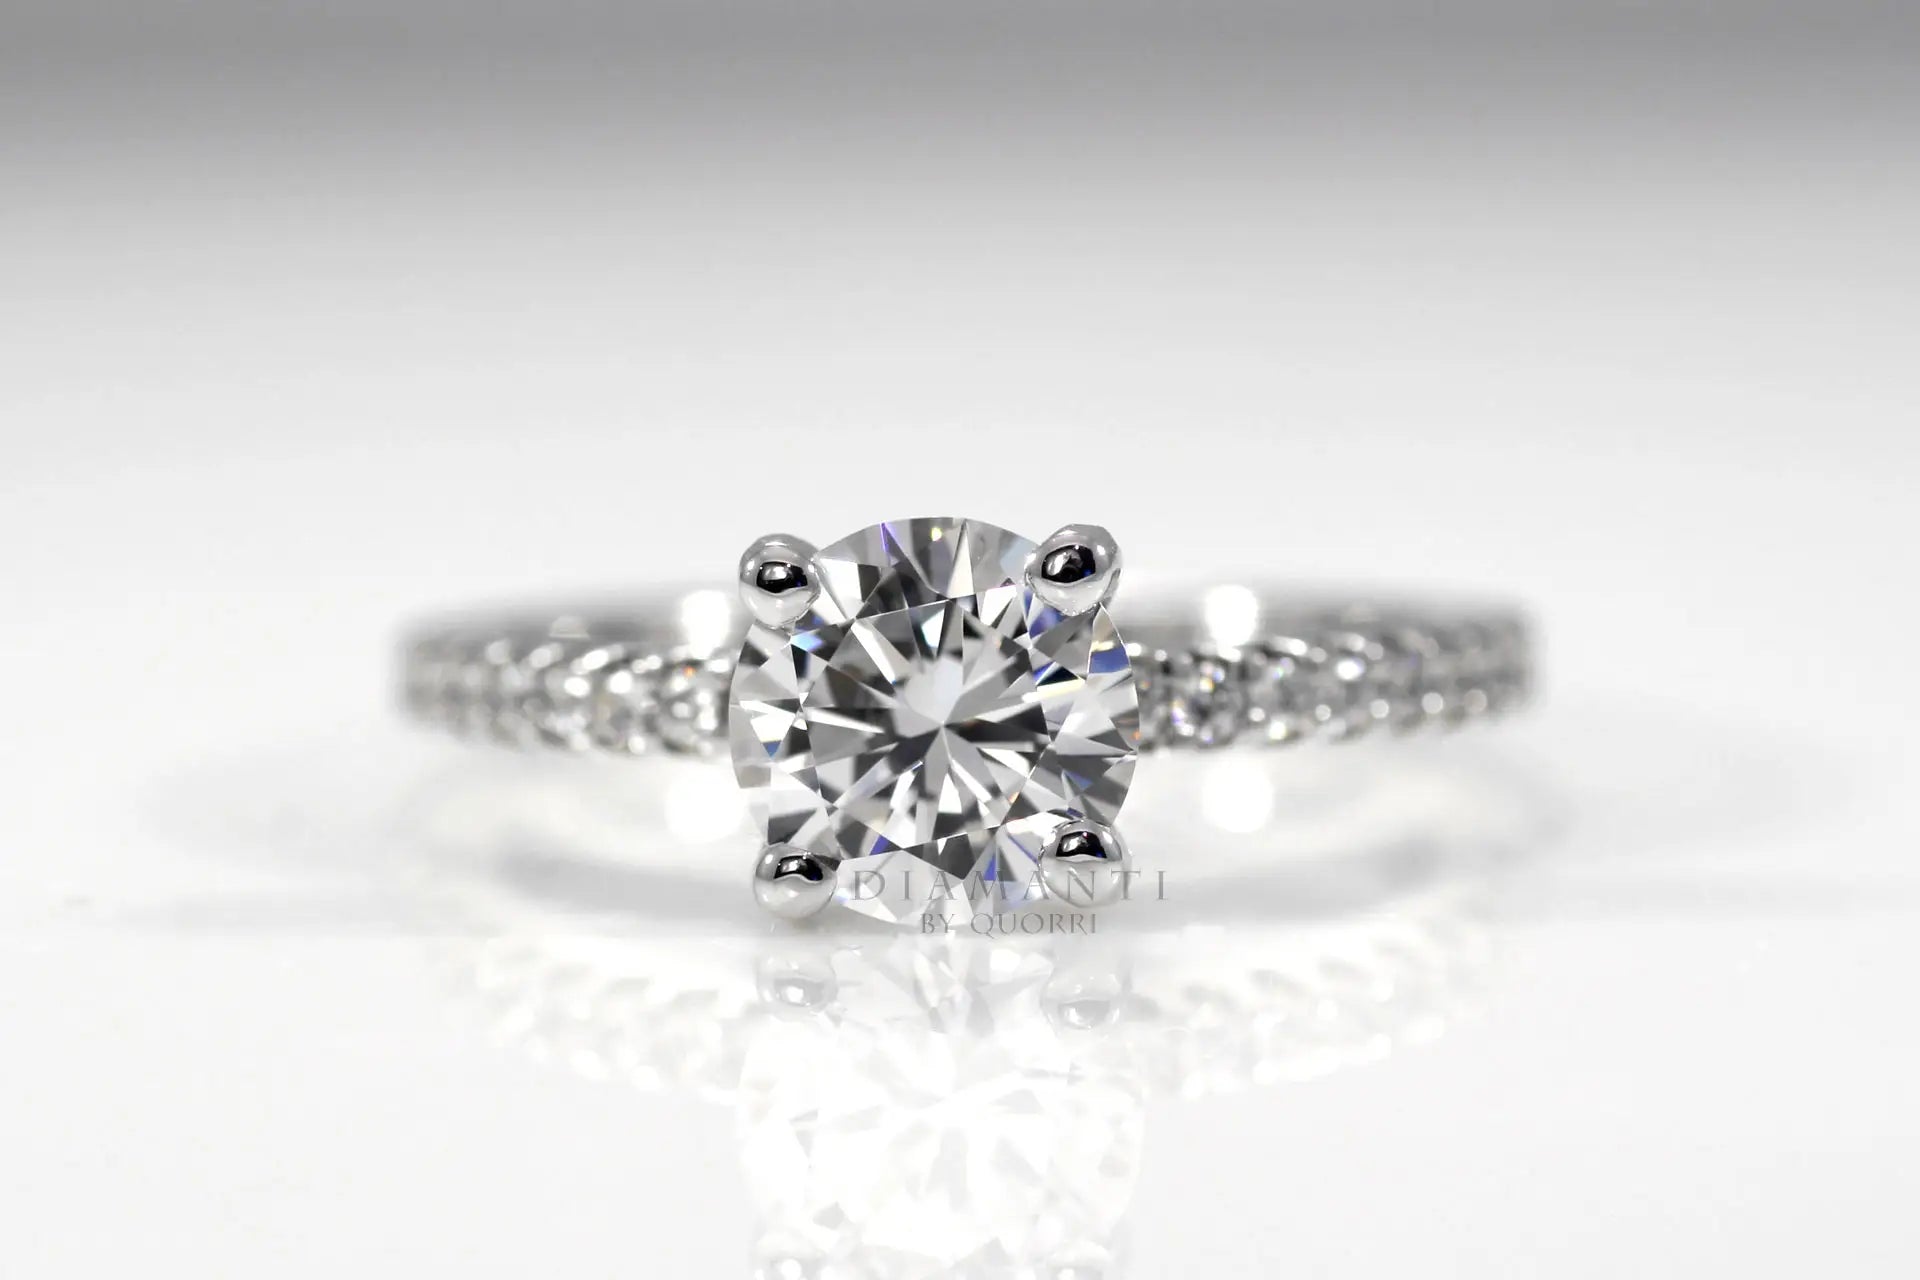 1.5 carat white gold accented round lab diamond engagement ring Quorri